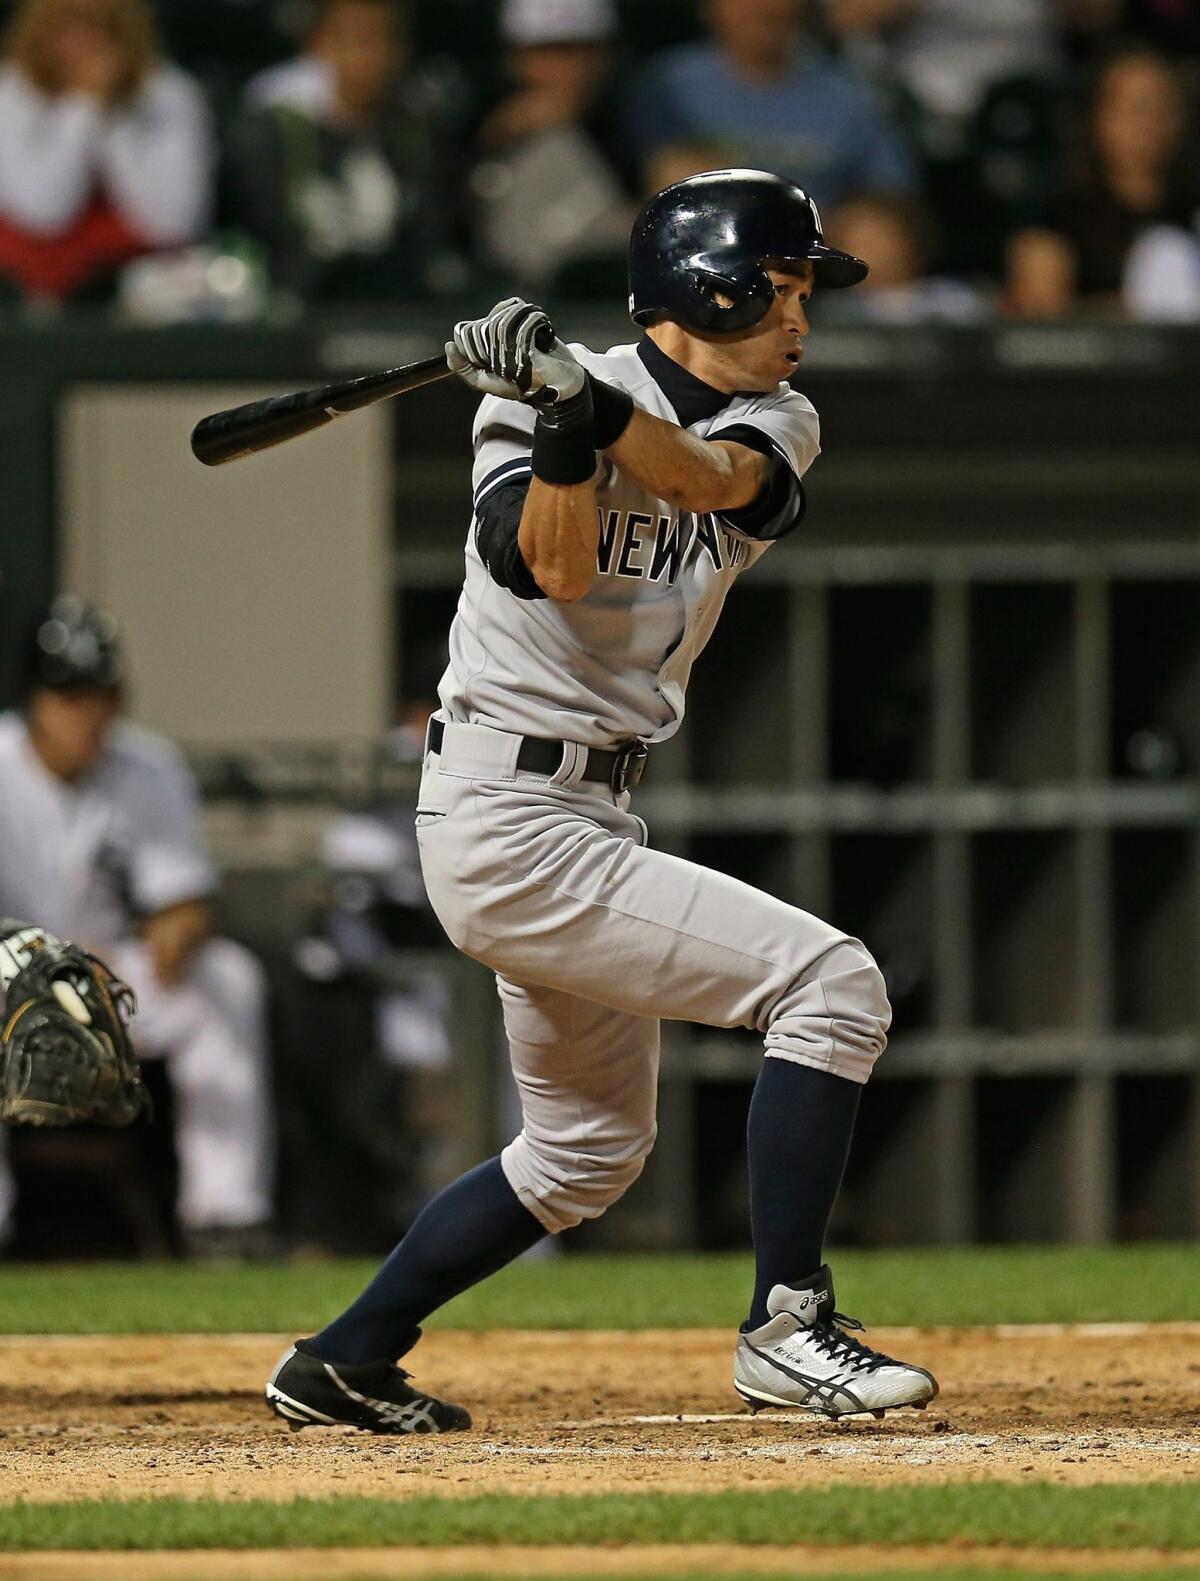 New York Yankees outfielder Ichiro Suzuki is closing in on a remarkable milestone.